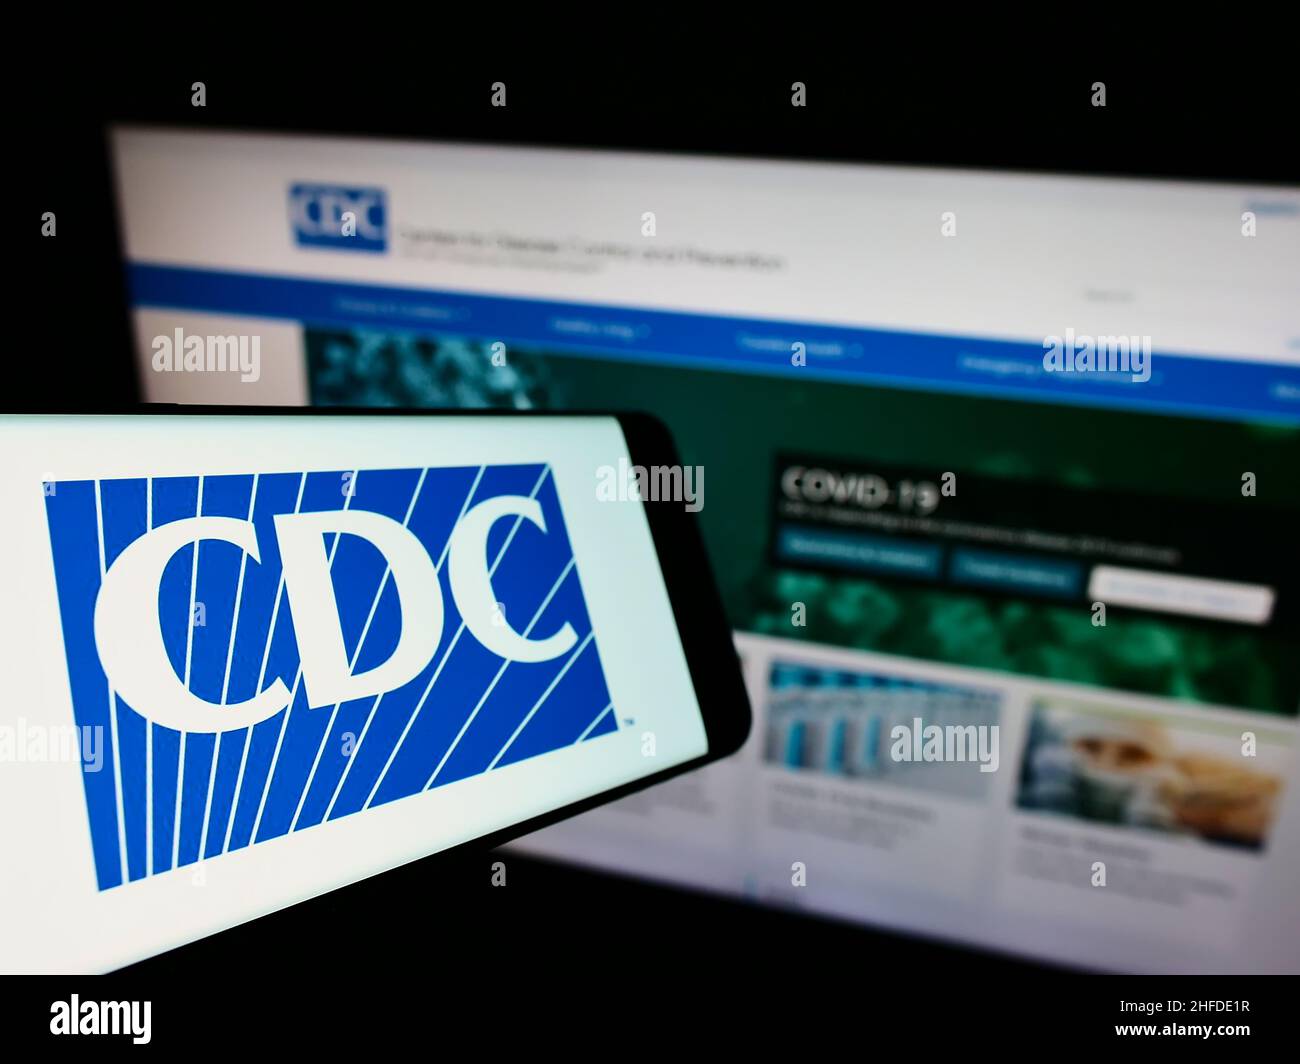 Cellulare con logo dei Centri per il controllo e la prevenzione delle malattie (CDC) sullo schermo di fronte al sito web. Messa a fuoco al centro-sinistra del display del telefono. Foto Stock